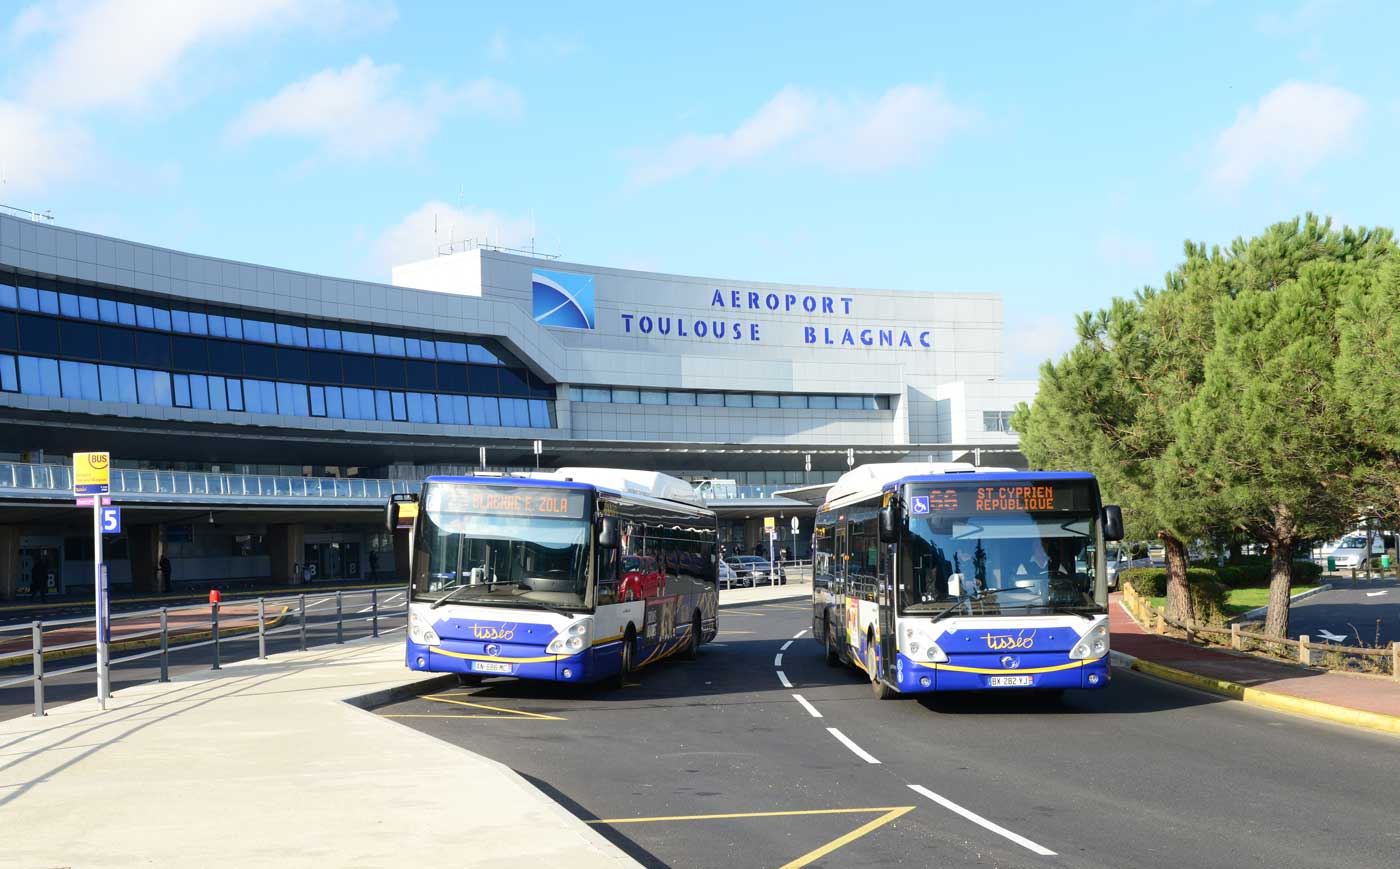 Une station et des bus à hydrogène pour l'aéroport de Toulouse 